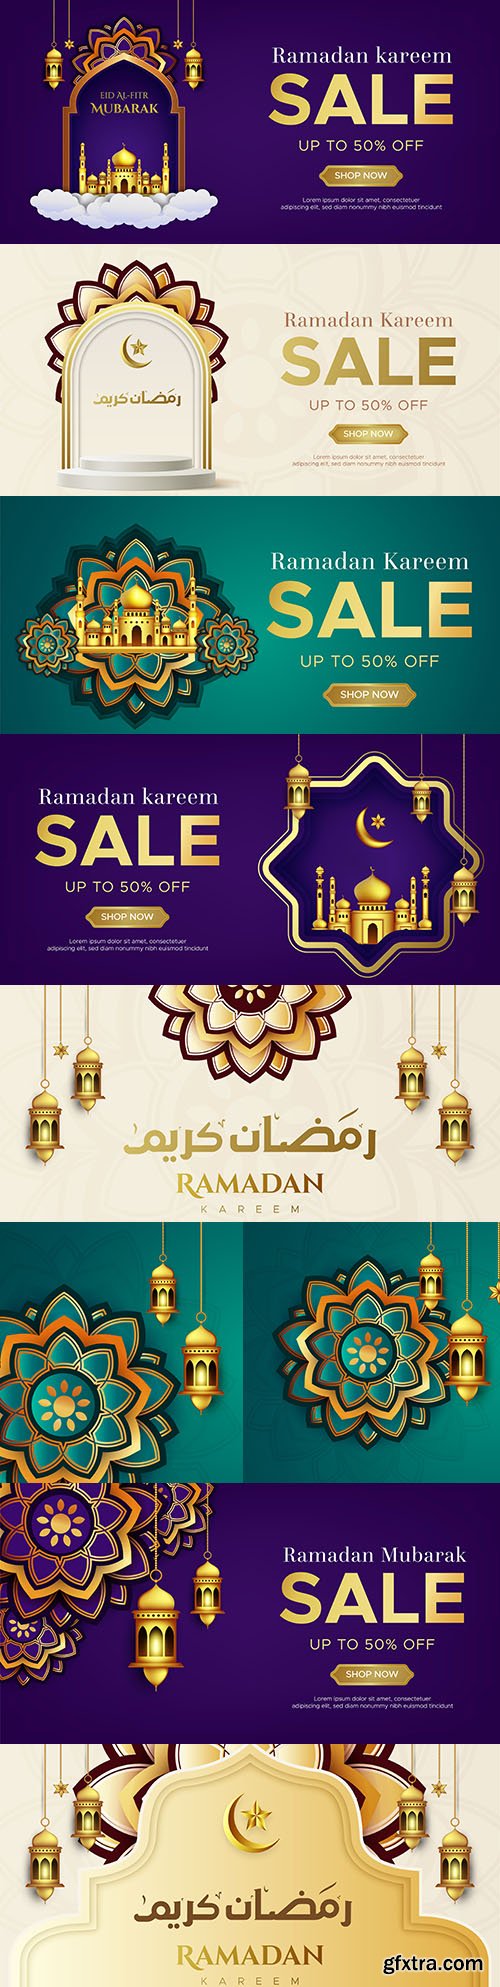 Ramadan Kareem sale banner web design template
